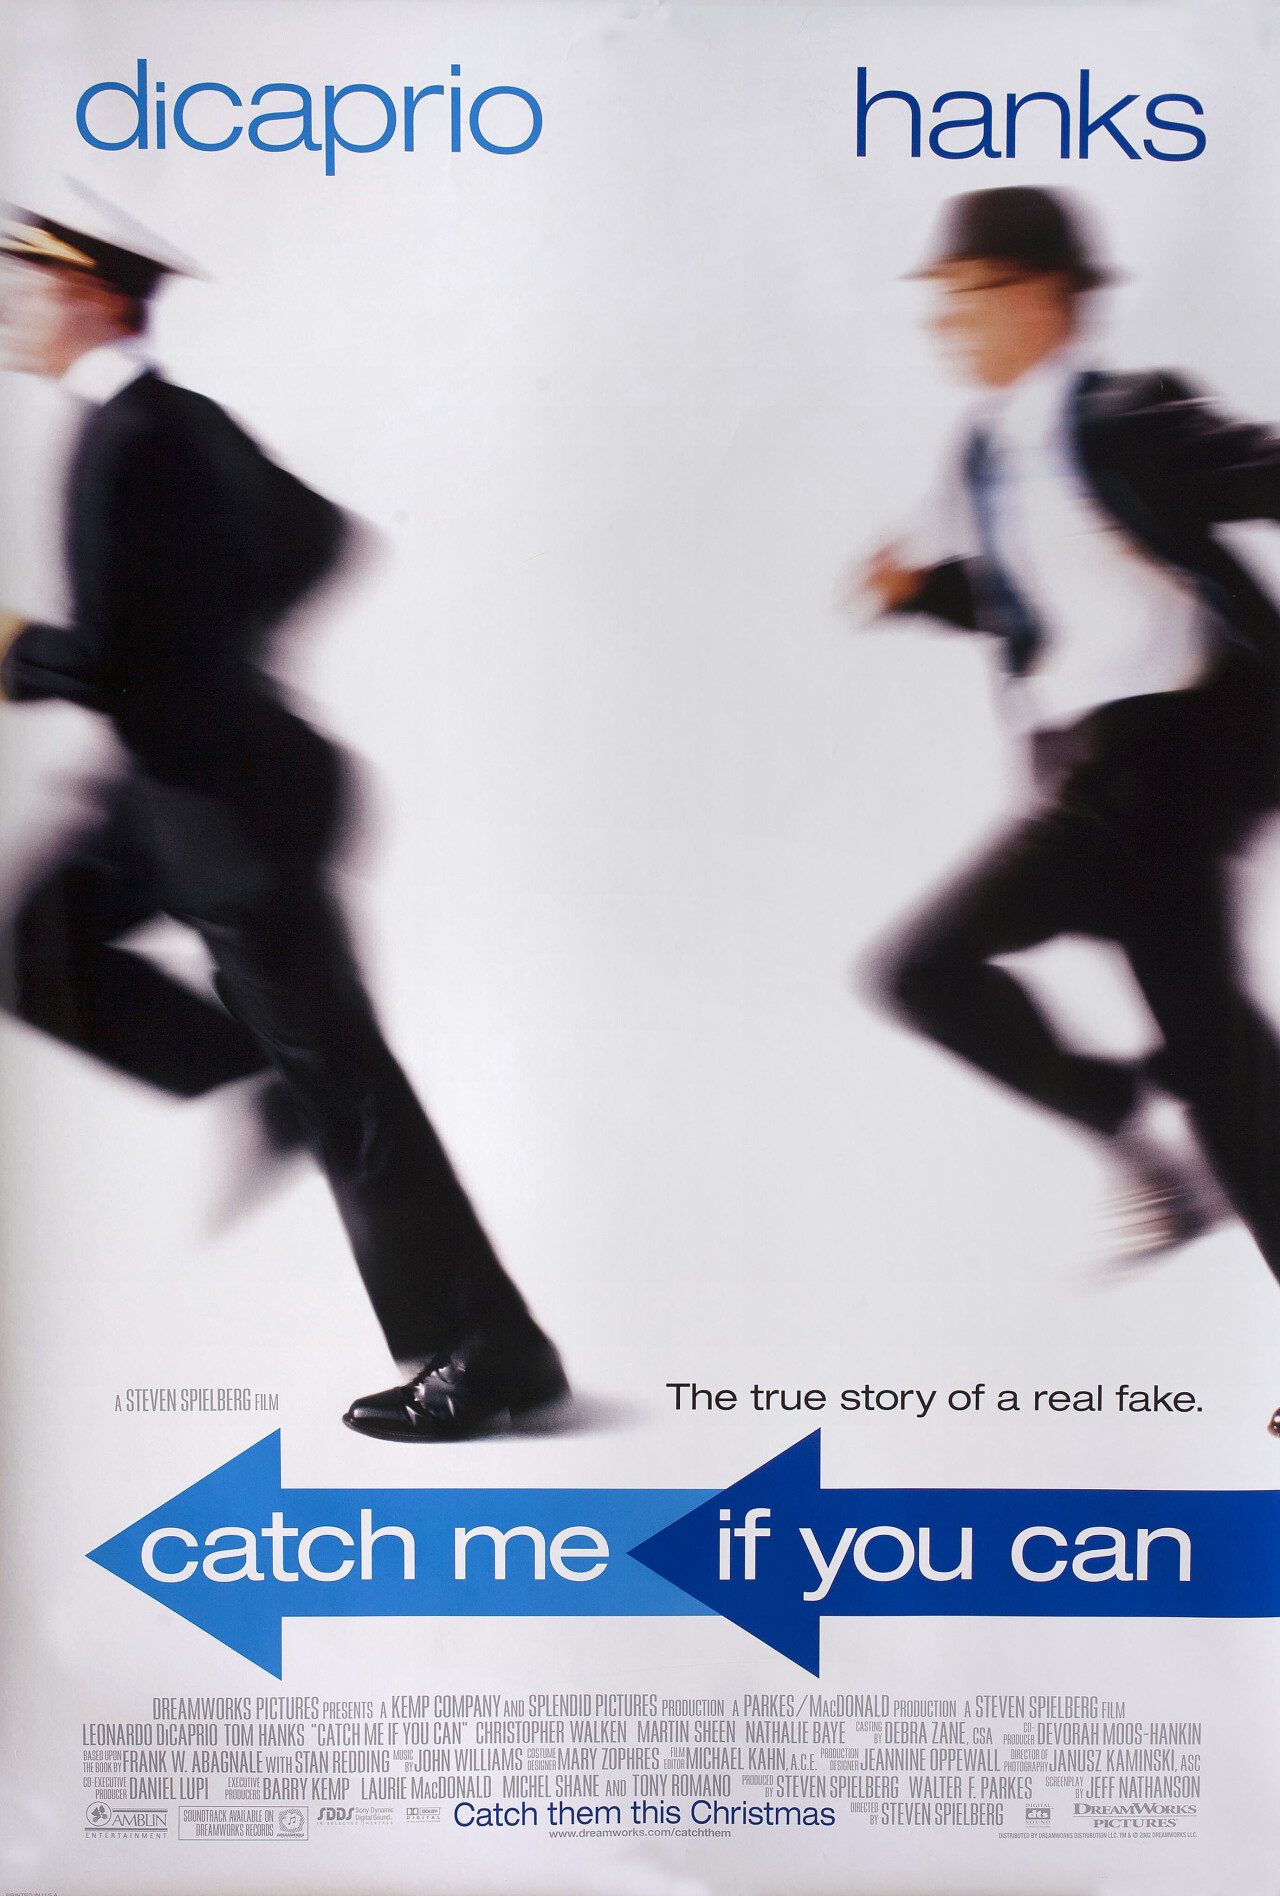 Поймай меня, если сможешь (Catch Me If You Can, 2002), режиссёр Стивен Спилберг, американский постер к фильму (графический дизайн, 2002 год)